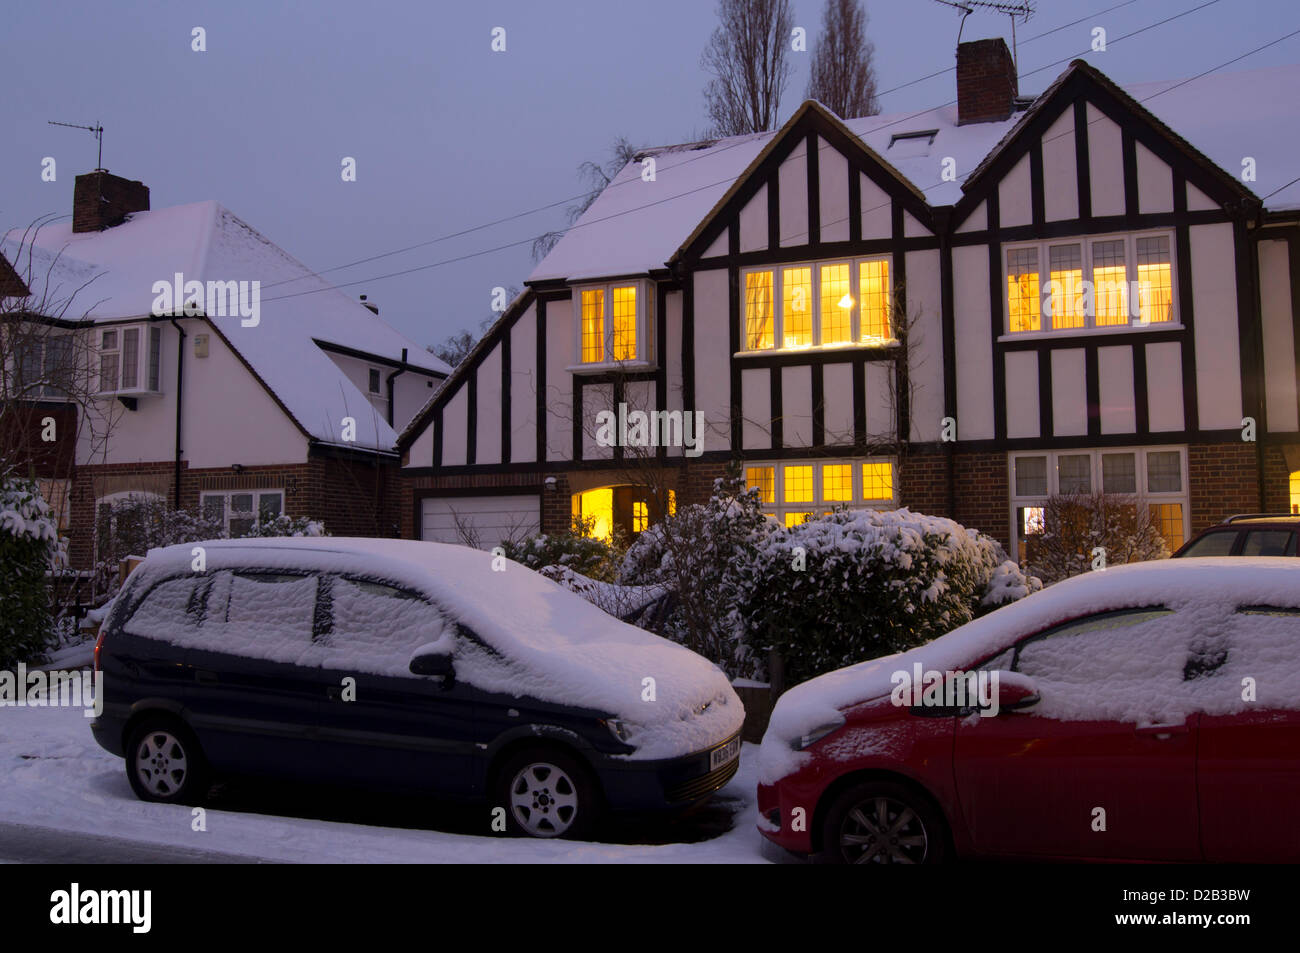 Surrey, UK. 18th Jan, 2013. UK, England, Surrey, house snow at dusk Stock Photo